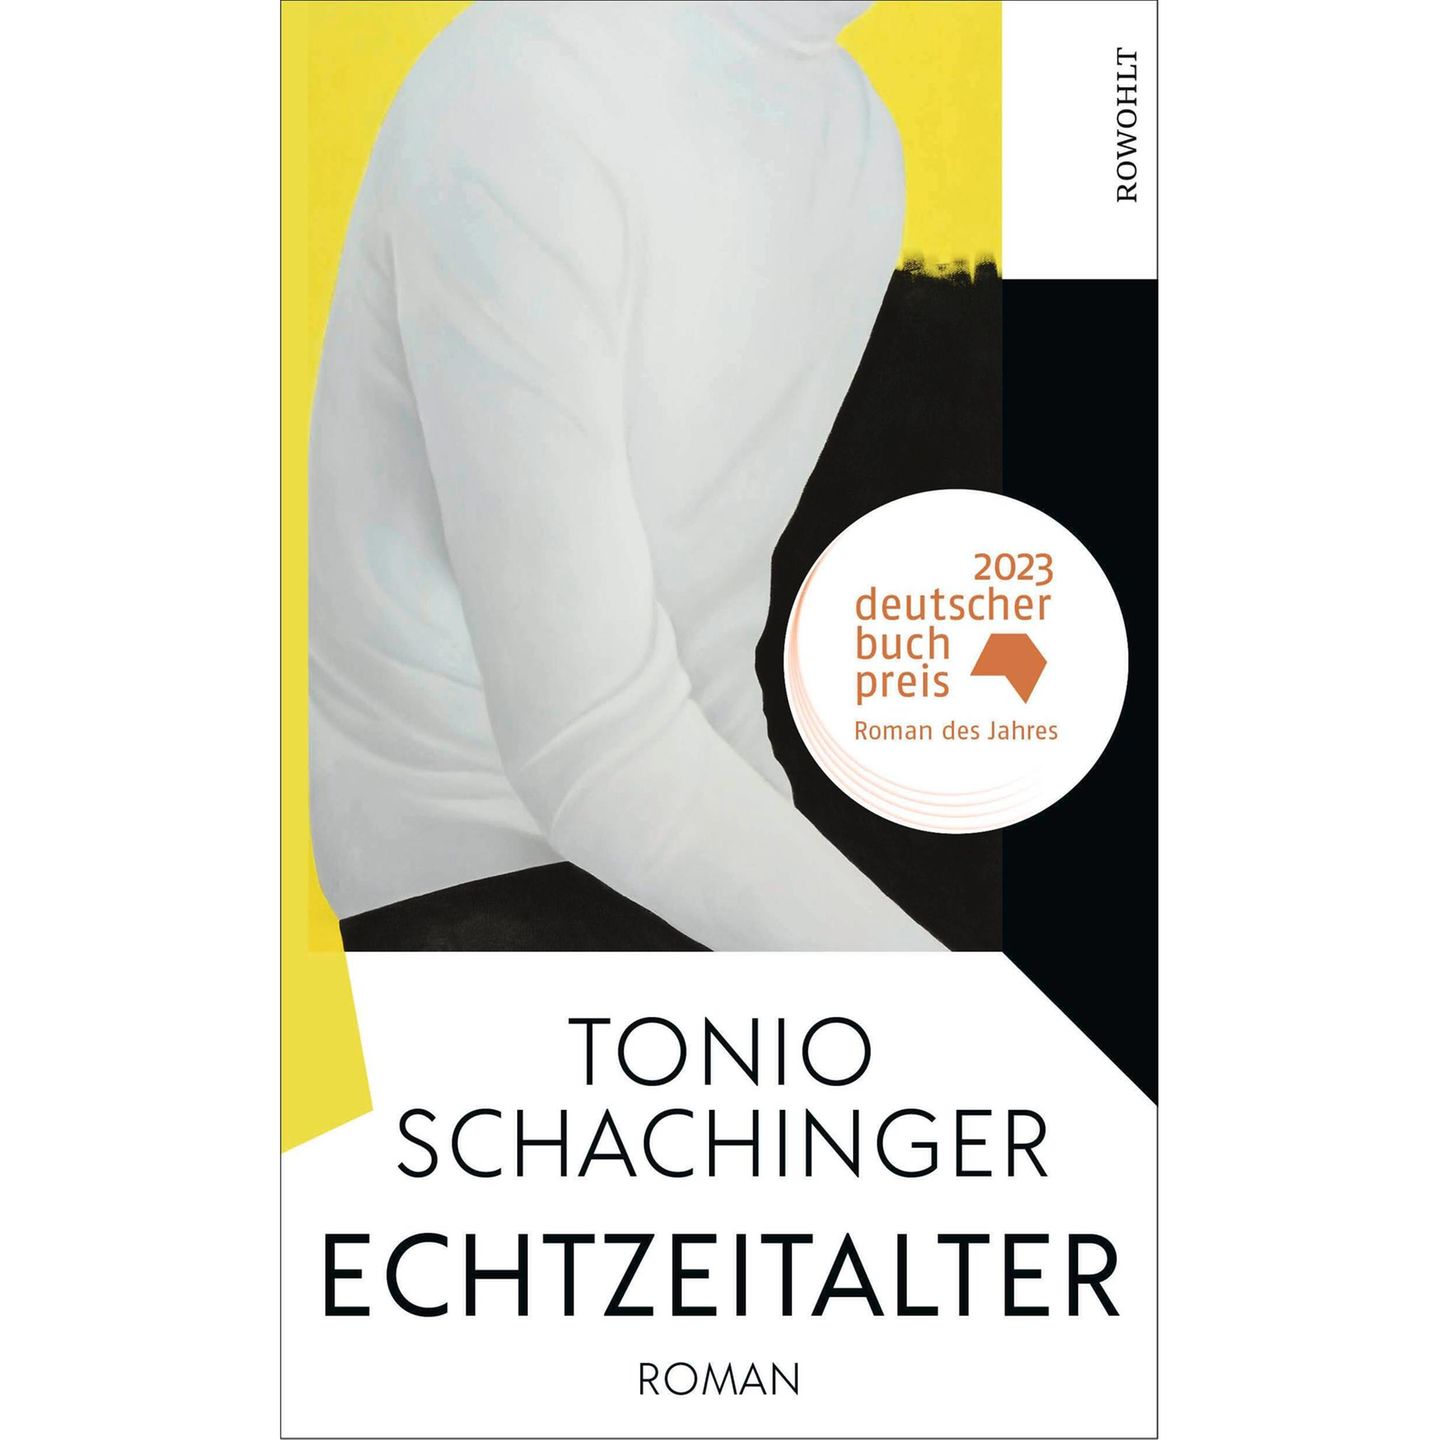 Tonio Schachinger – Echtzeitalter